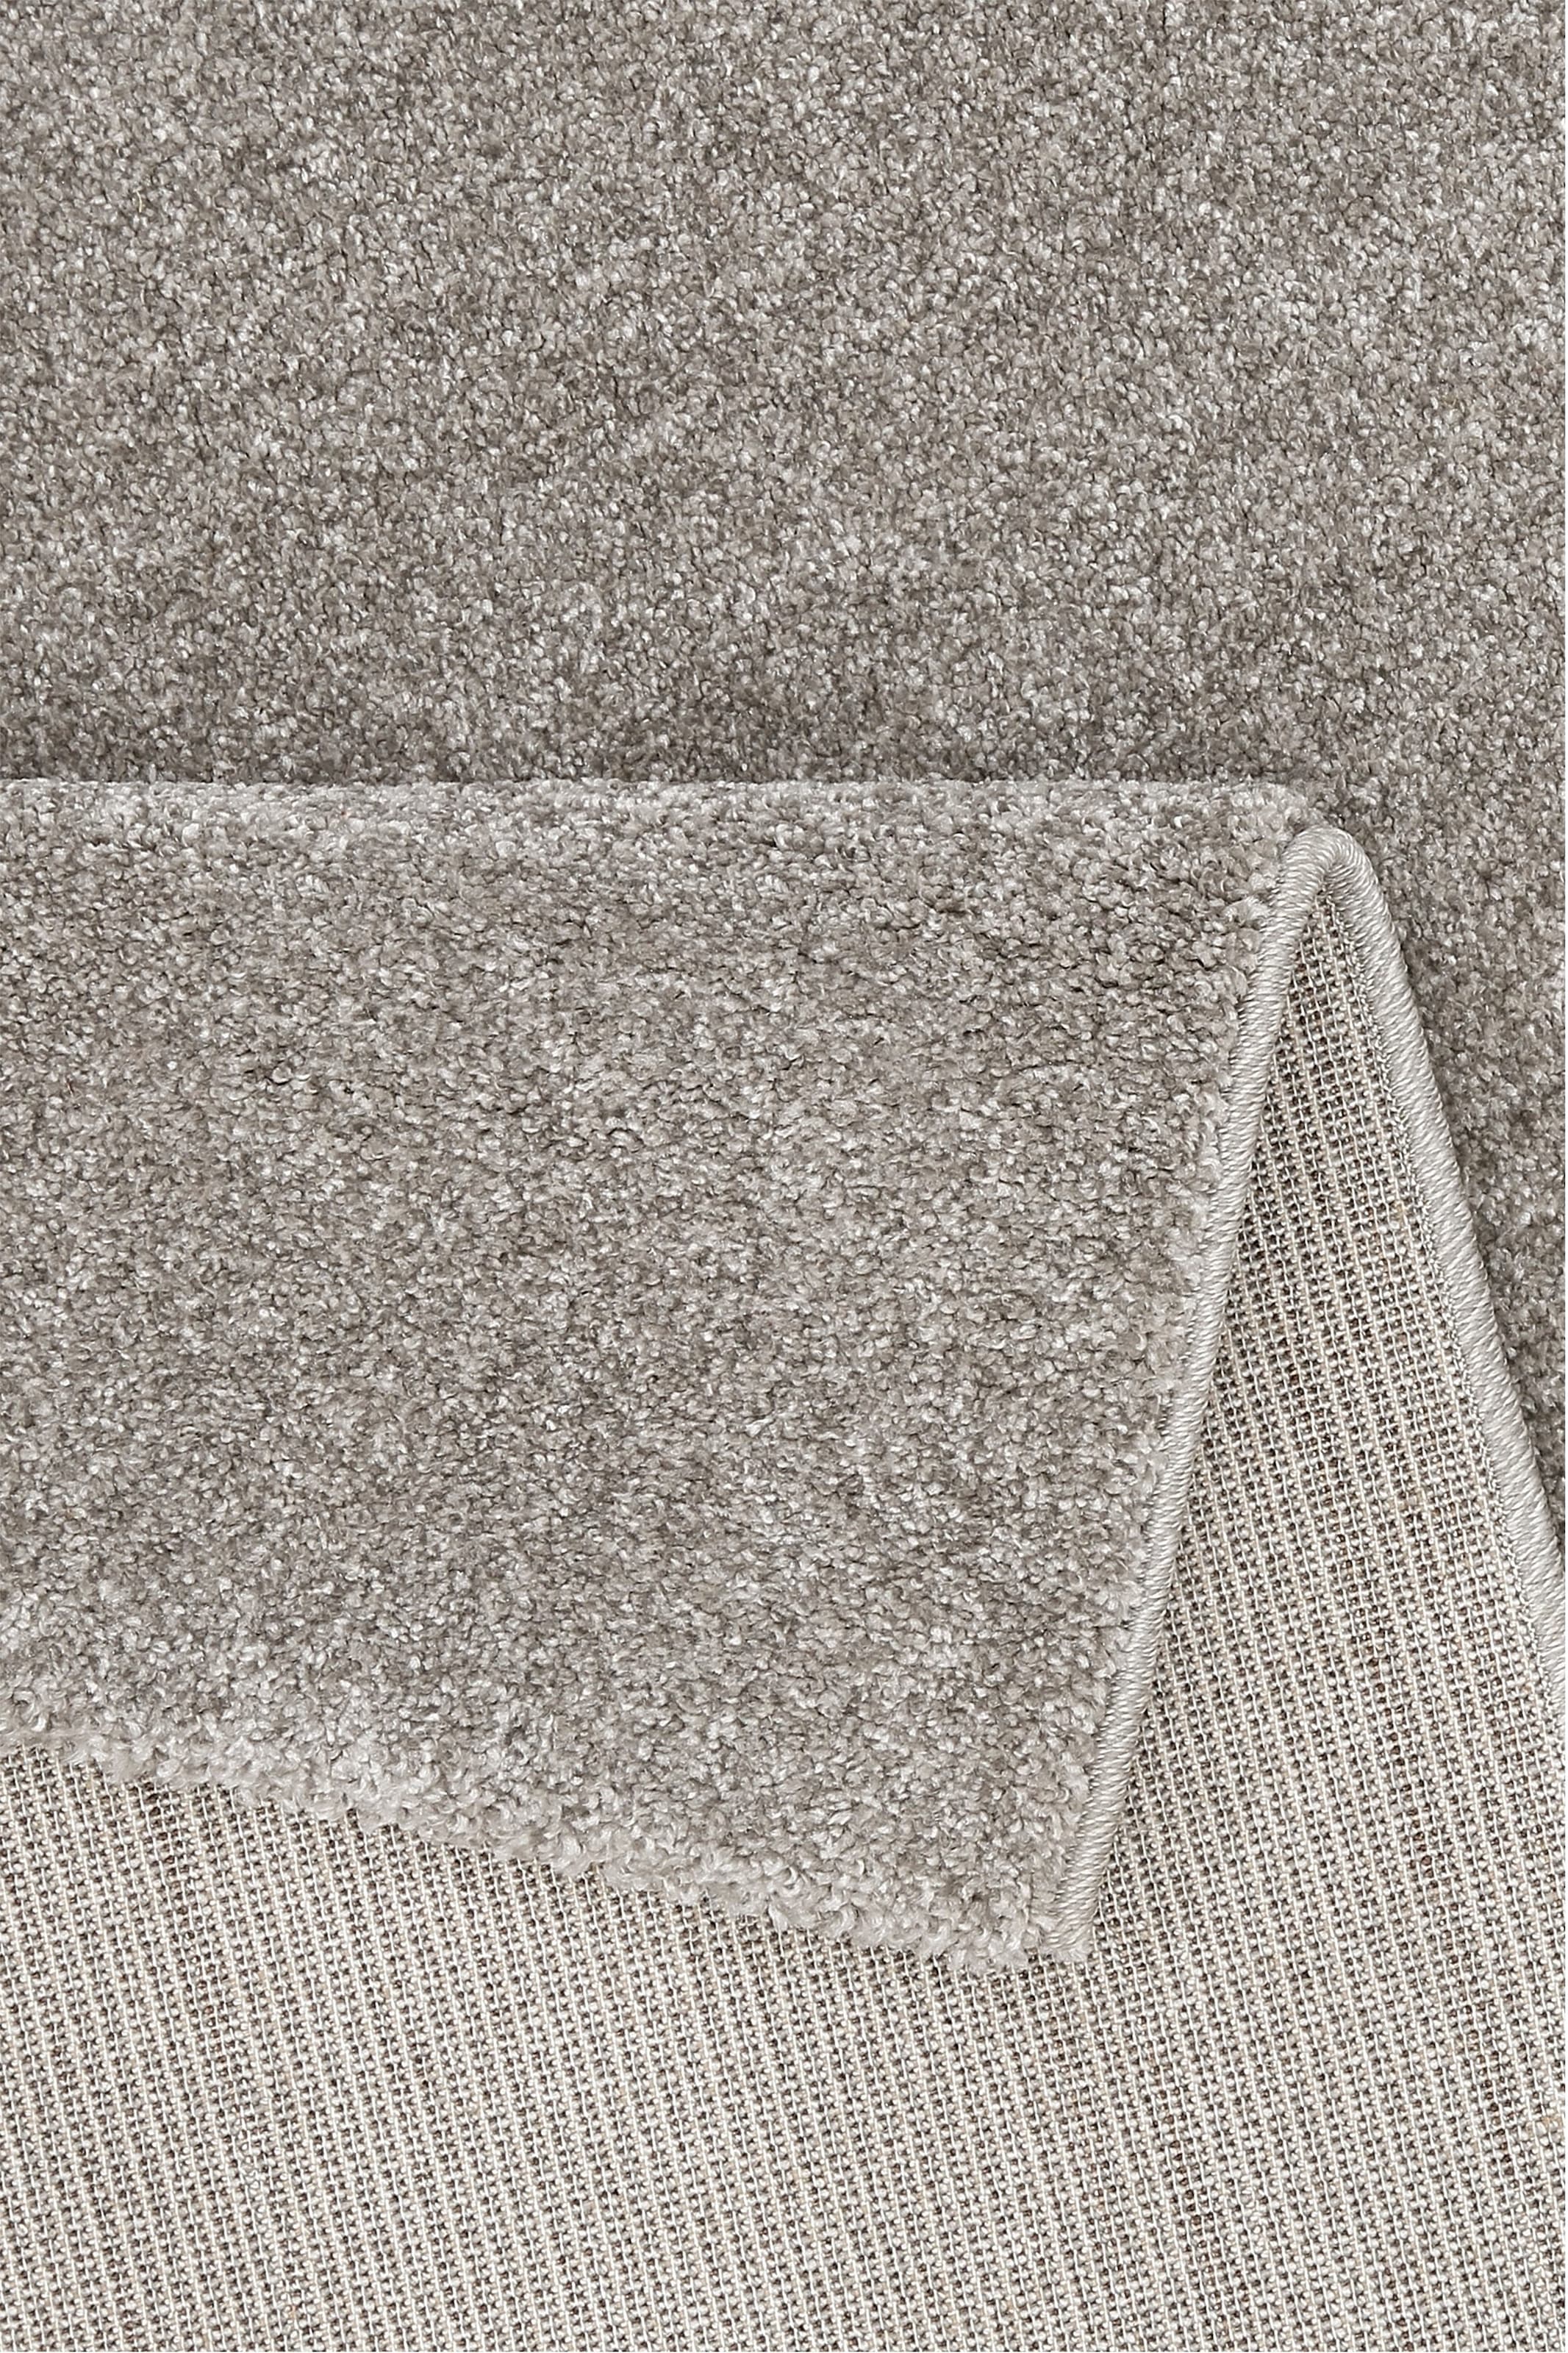 Home affaire Teppich »Tore«, rechteckig, Kurzflor, Frisee-Teppich, besonders dichte Qualität, flach, einfarbig